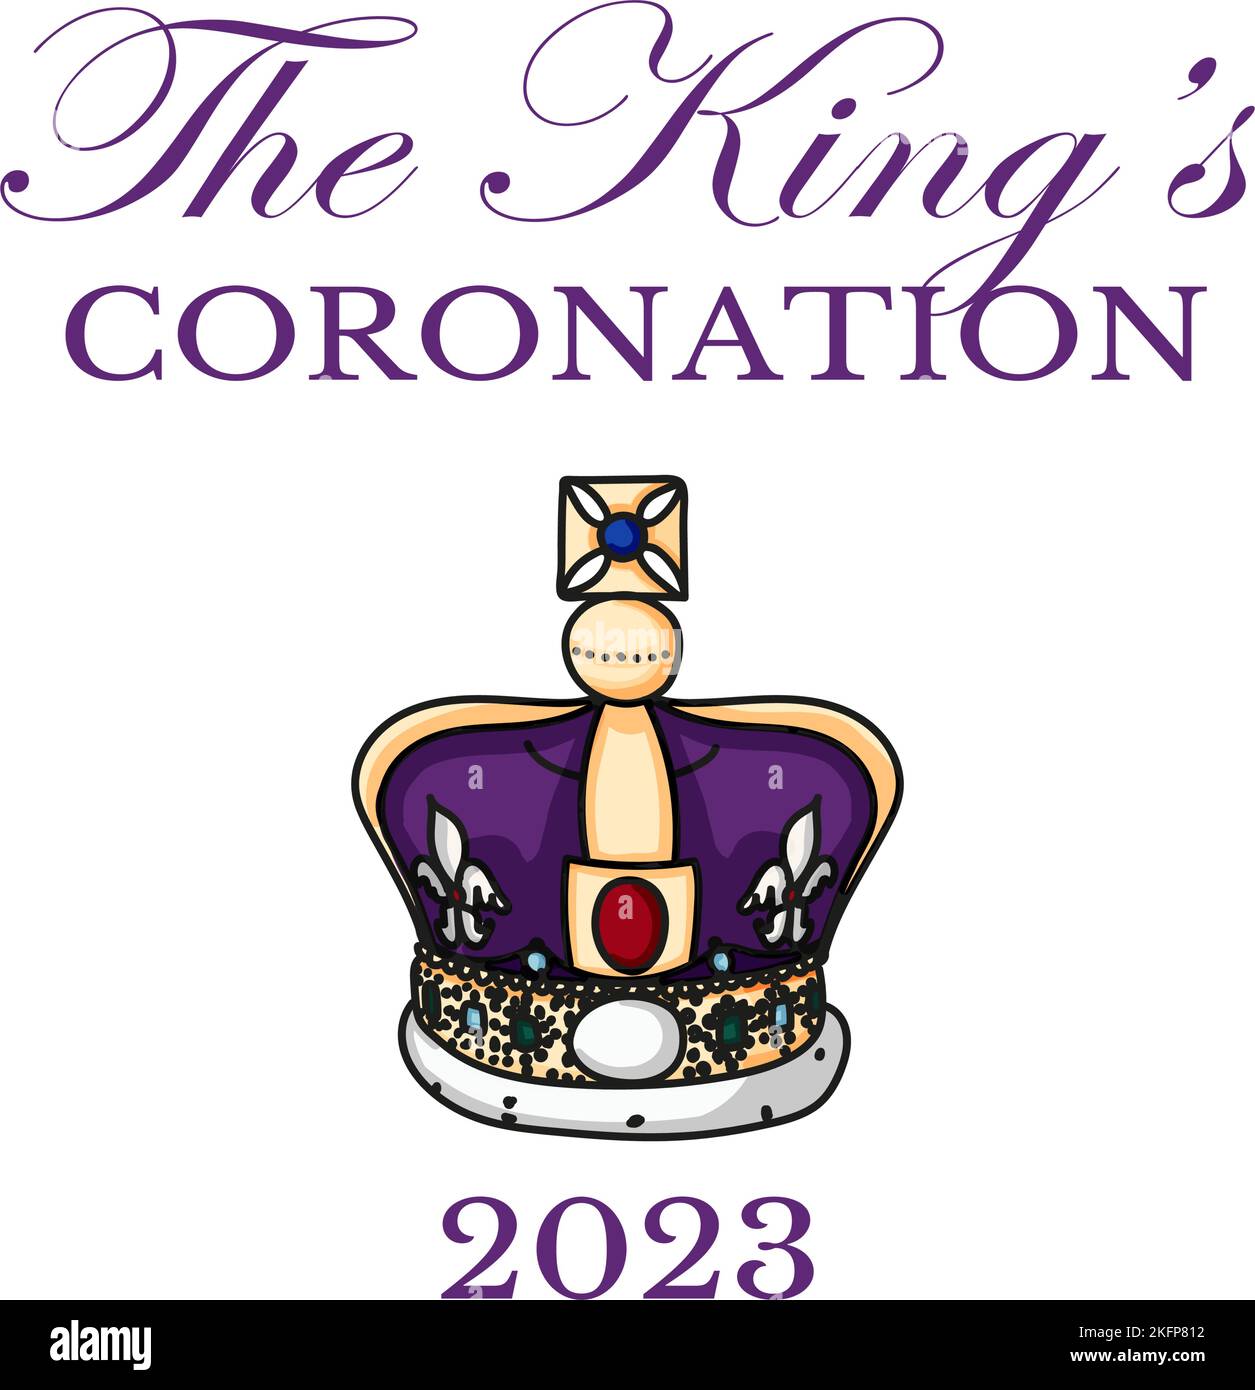 Affiche pour King Charles III Coronation avec illustration du vecteur drapeau britannique. Carte de vœux pour célébrer le couronnement du prince Charles de Galles devient roi d'Angleterre. Illustration de Vecteur